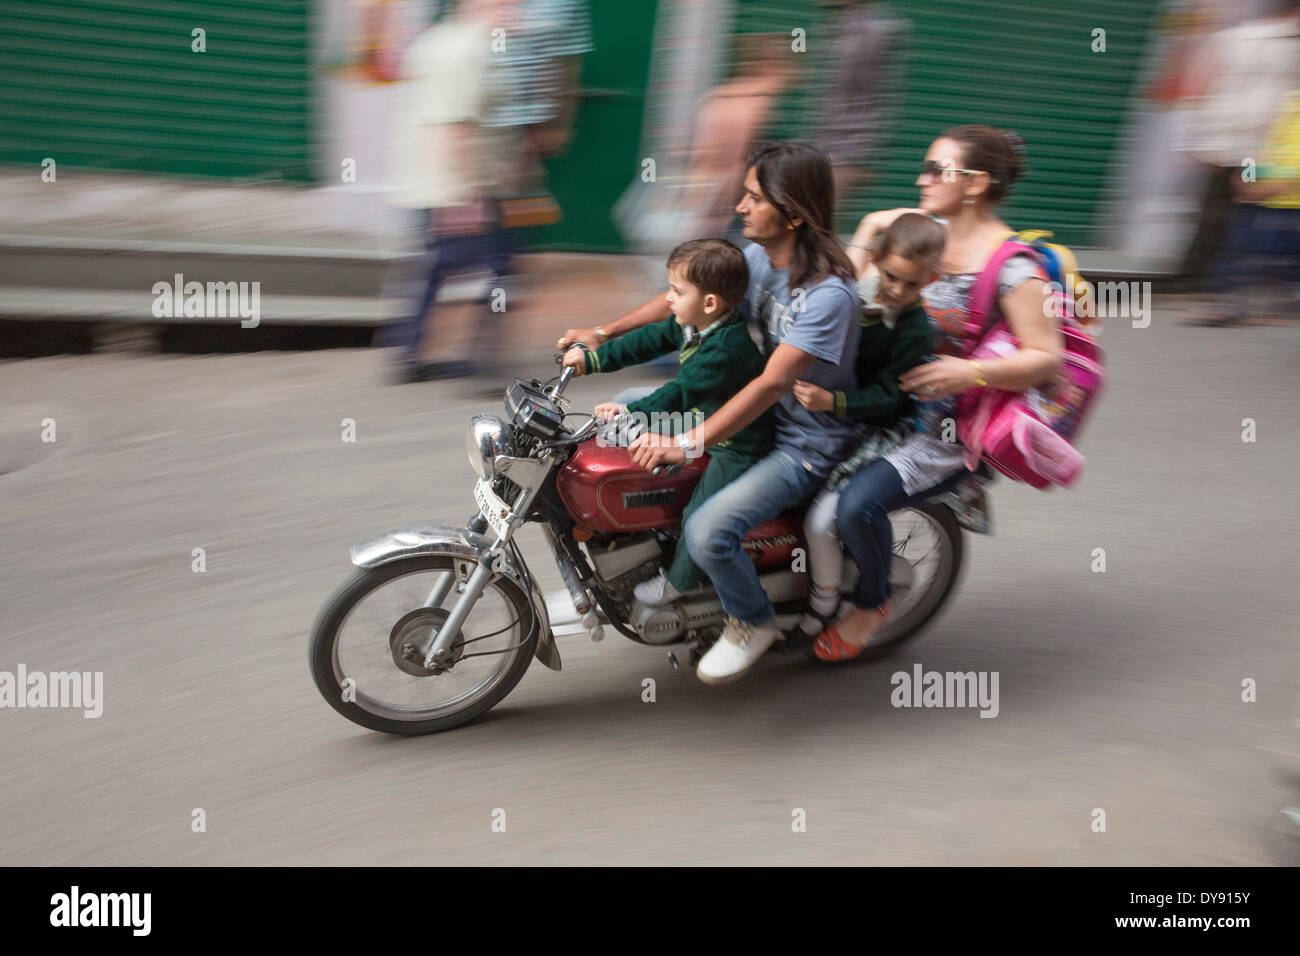 Motocicletta, scooter, guida, India, Asia, traffico, trasporti, famiglia, pericolose, Foto Stock